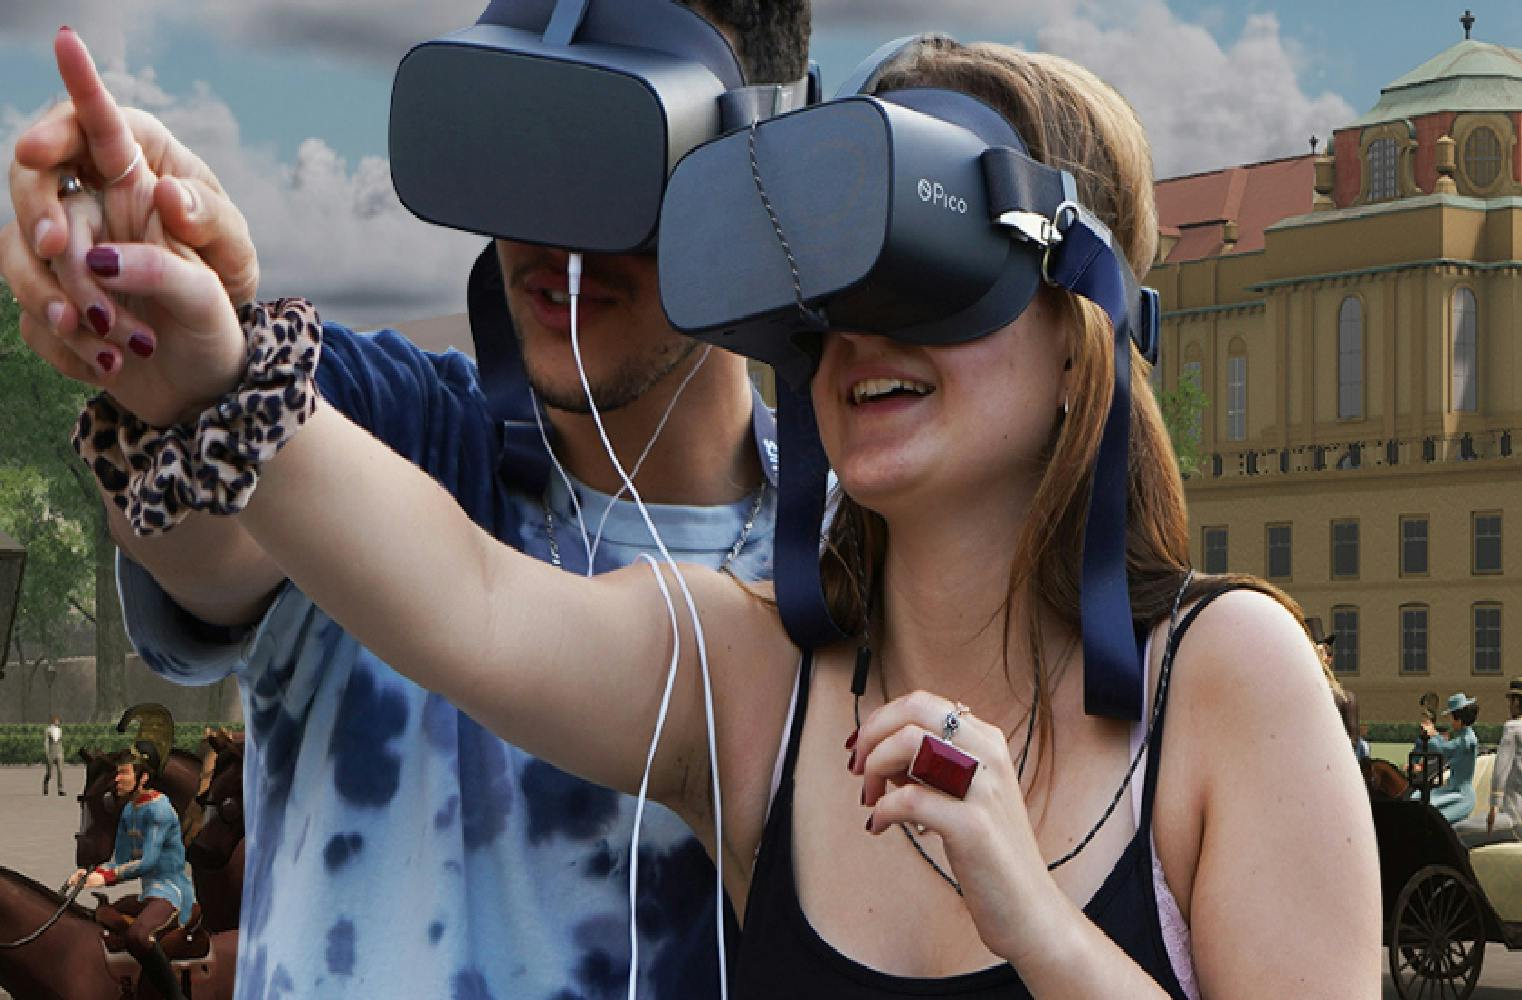 Virtuelle Zeitreise durch Wien | Lerne die Stadt neu kennen